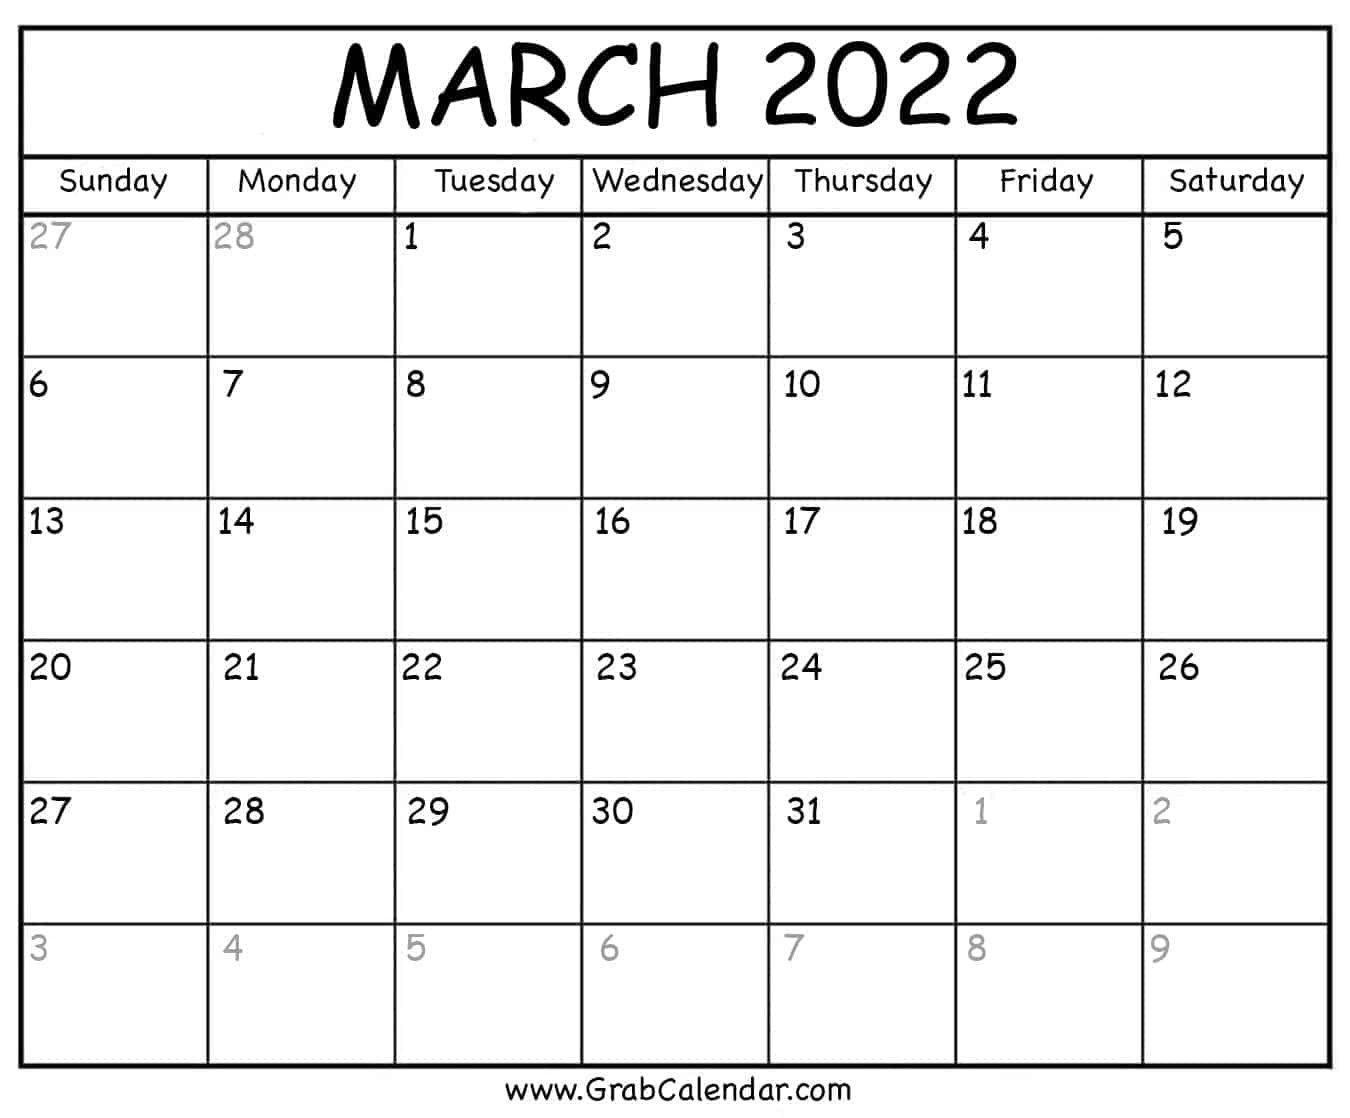 March 2022 Calendar Printable March 2022 Calendar